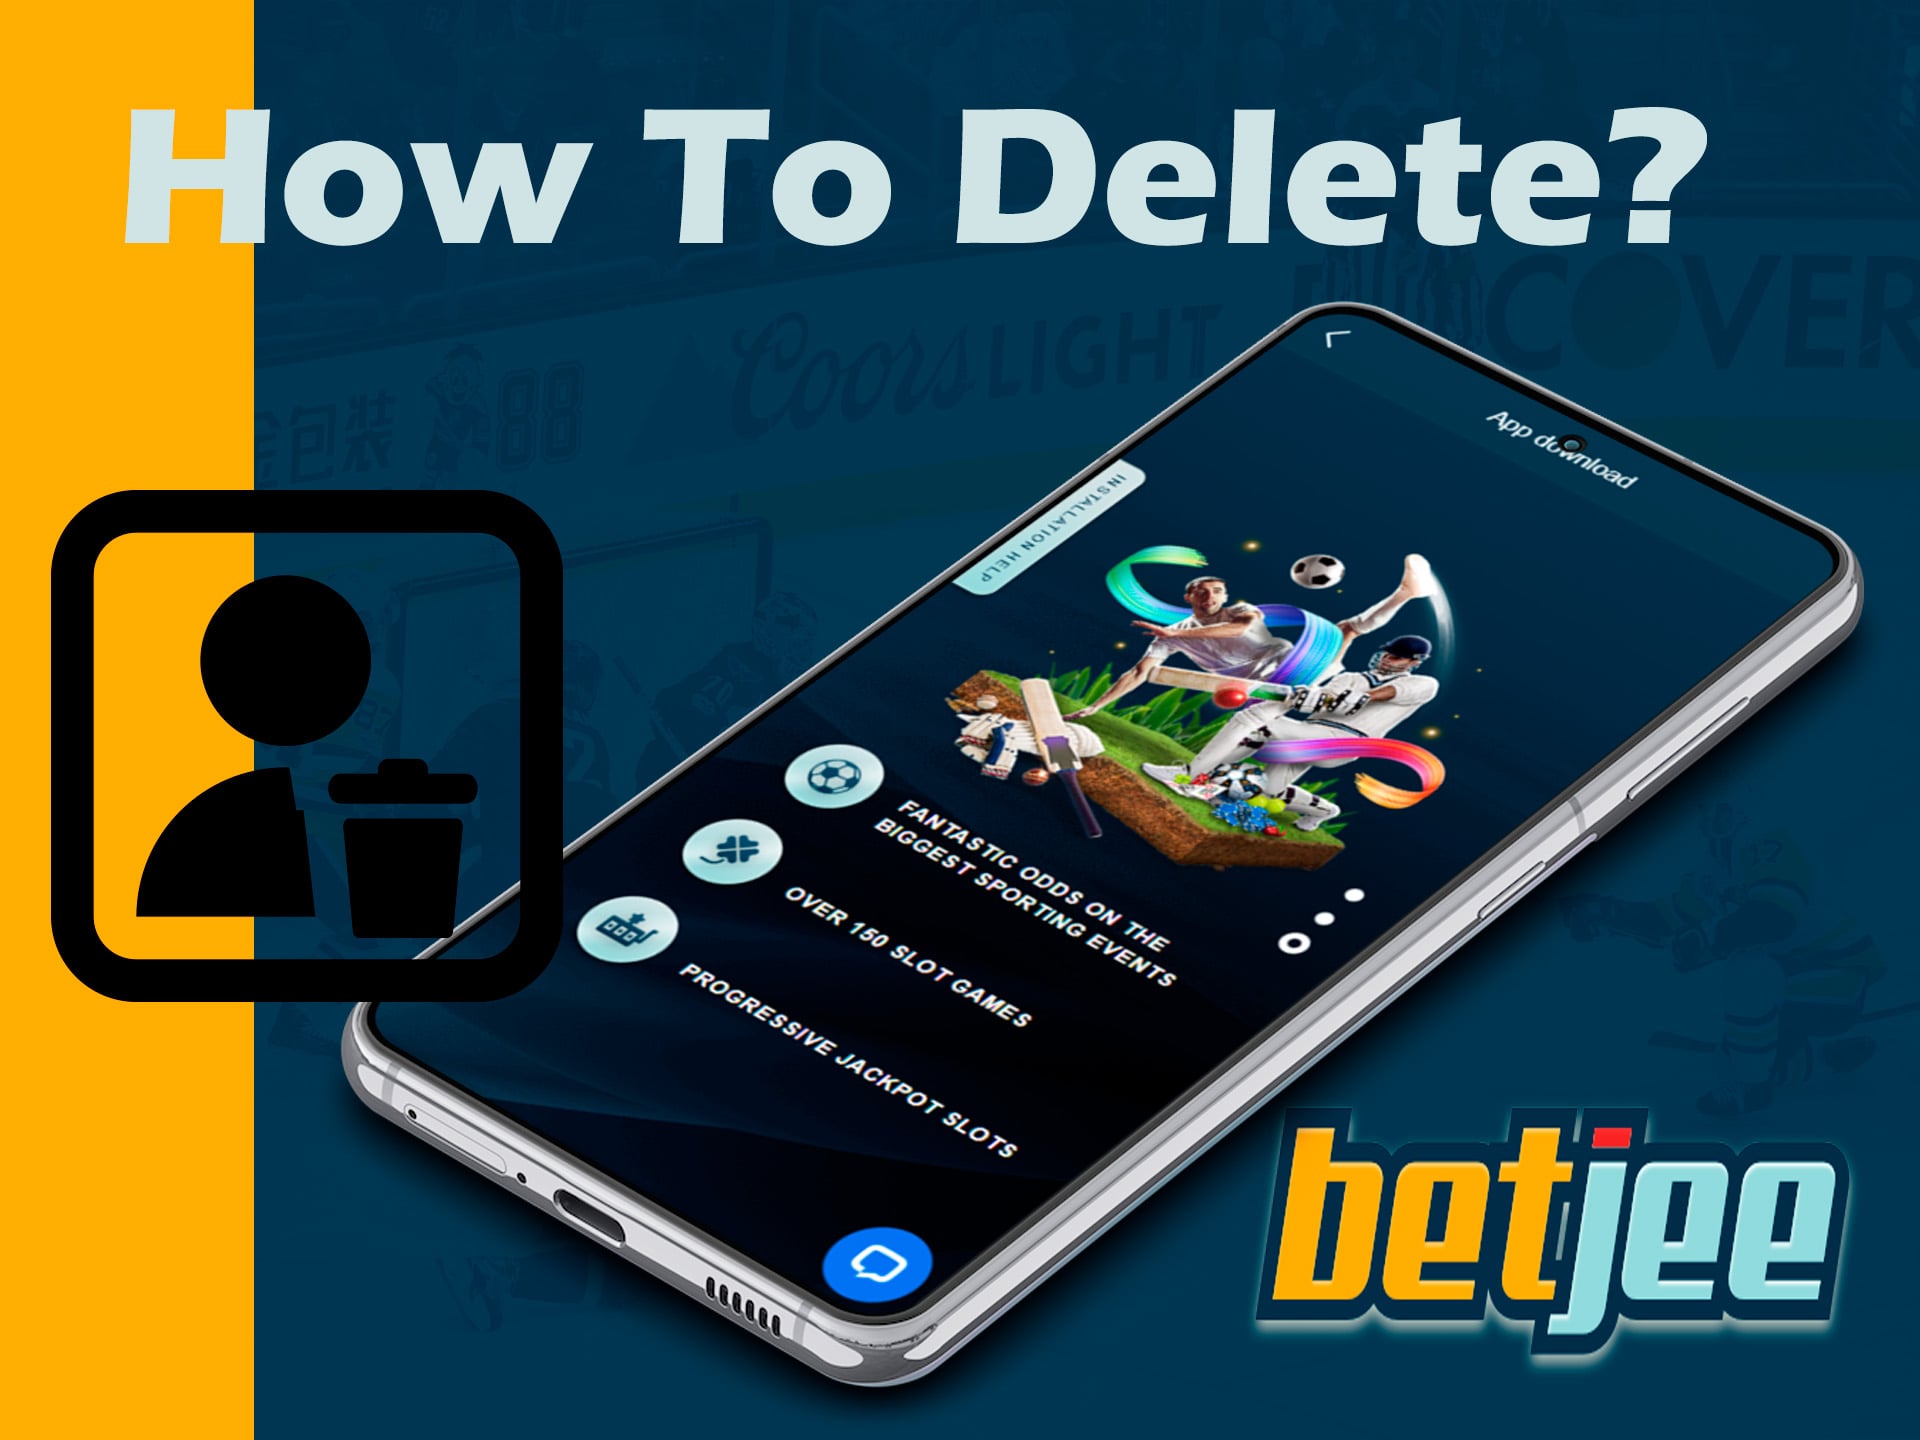 how to delete betjee app